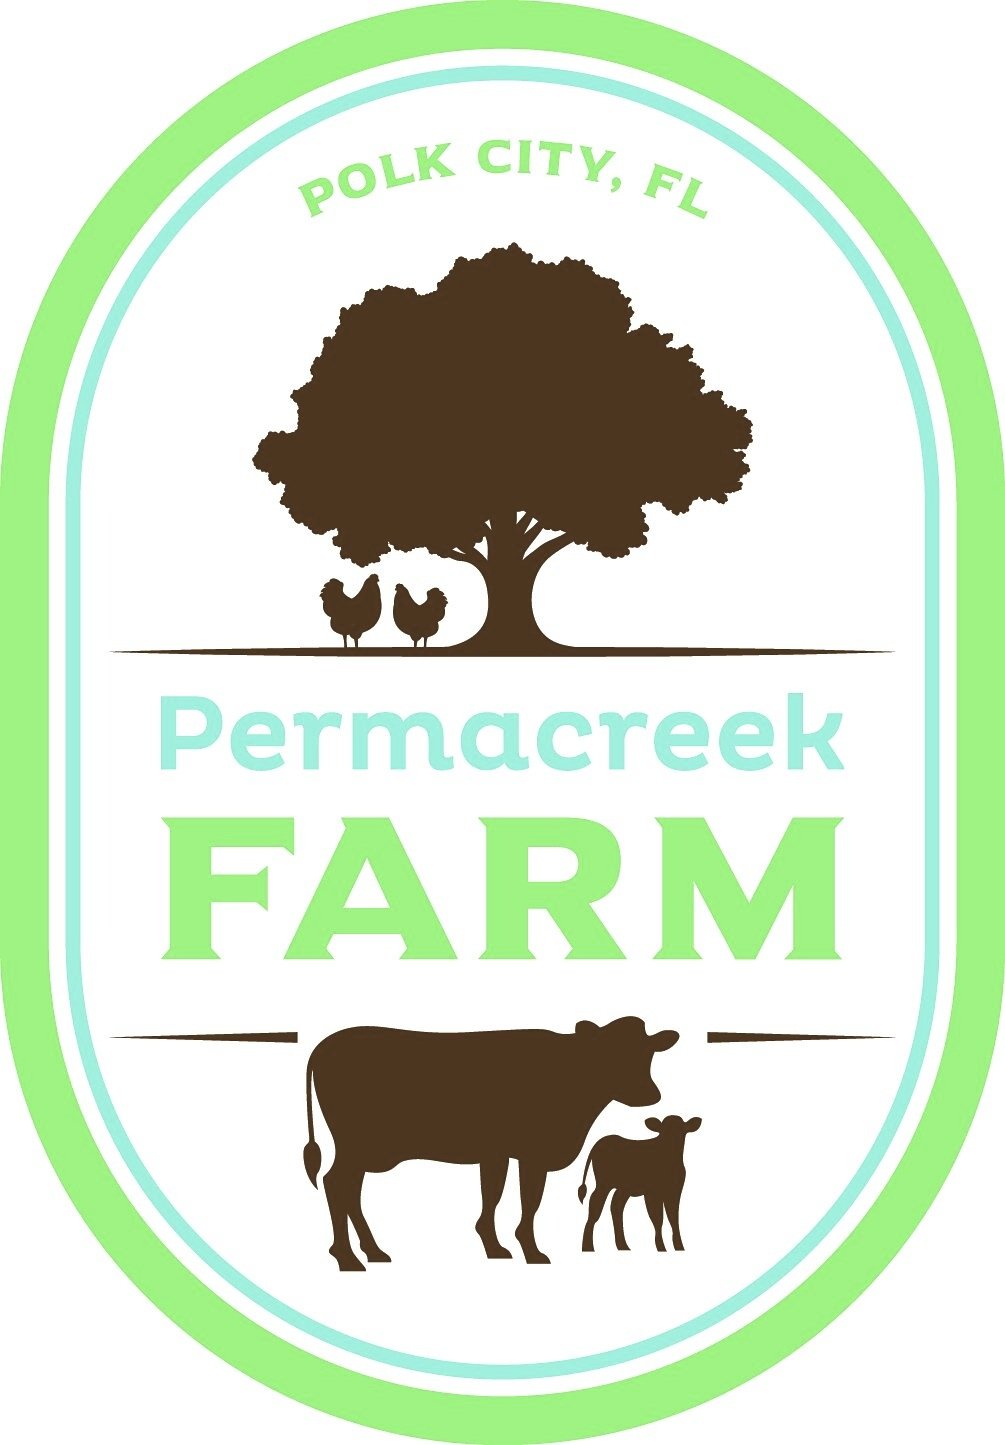 Permacreek Farm